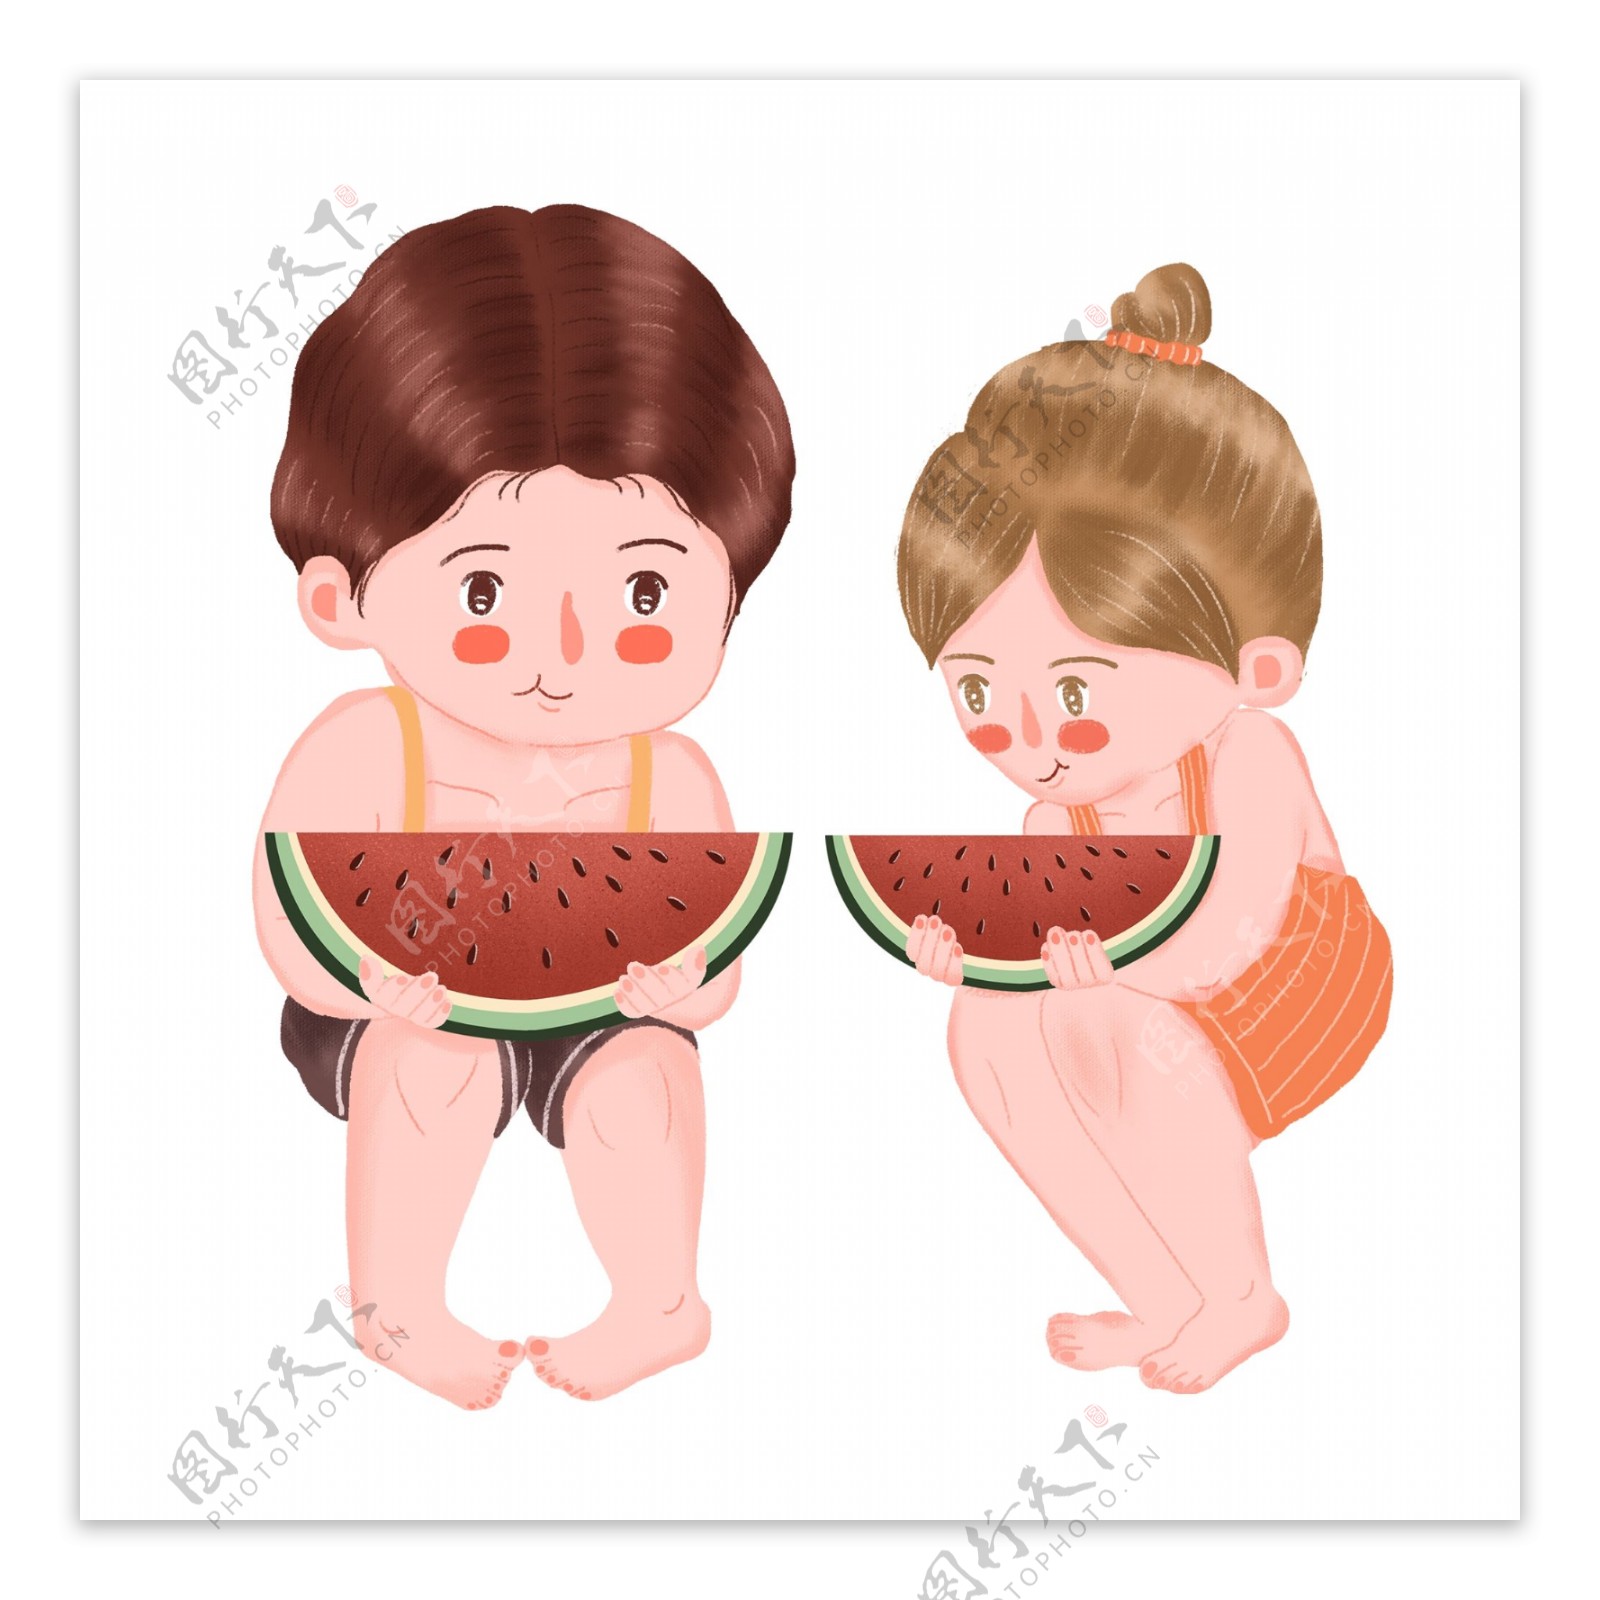 清凉夏天吃西瓜的兄妹俩手绘设计